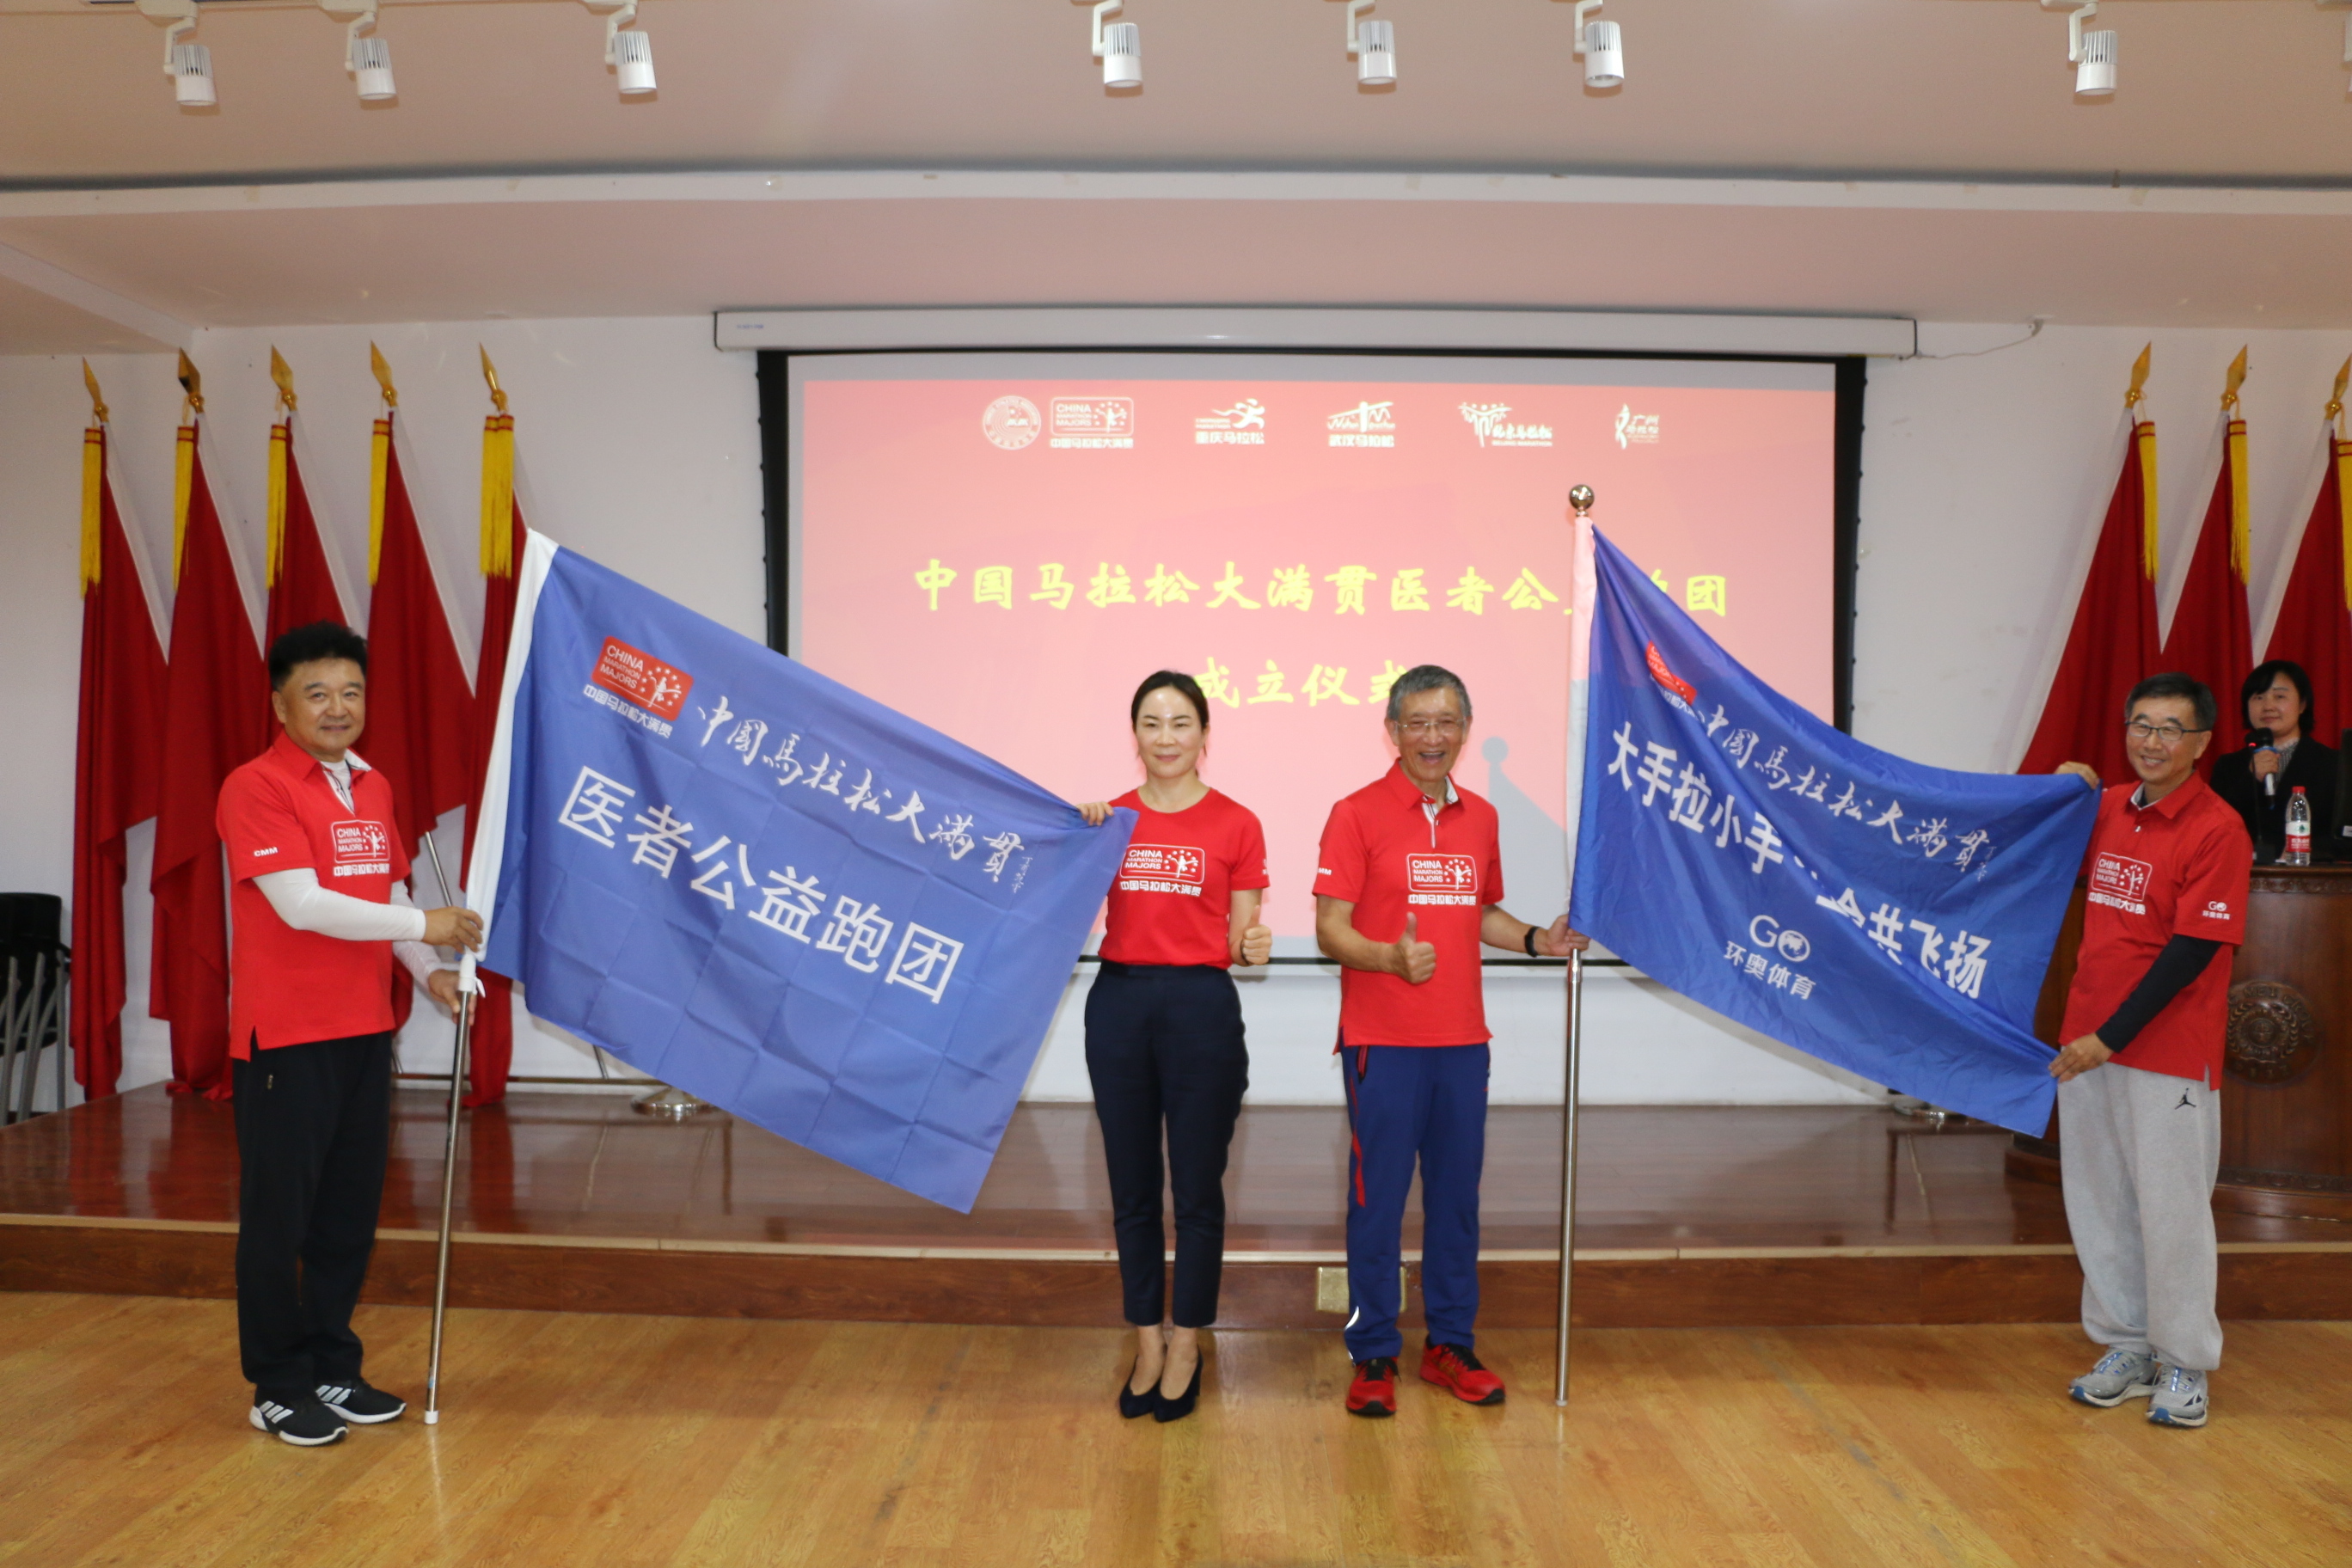 2020年10月1日率先在国内成立中国马拉松大满贯医者公益跑团